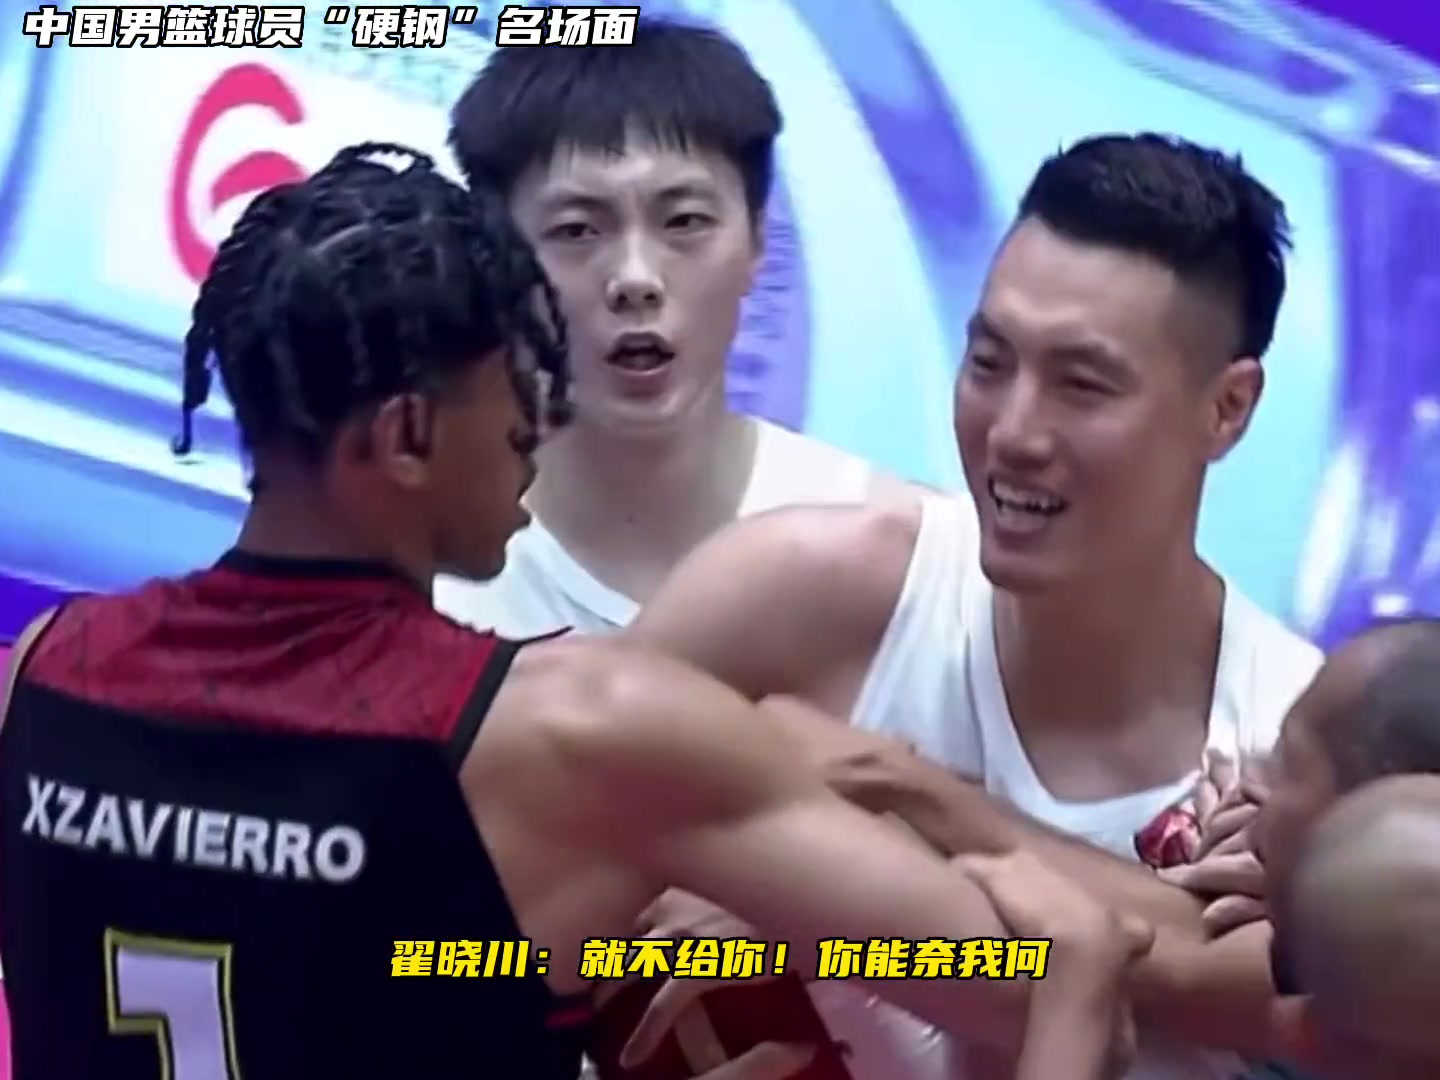 中国男篮的球员向来是不惹事也不怕事，面对挑衅从来没怂过